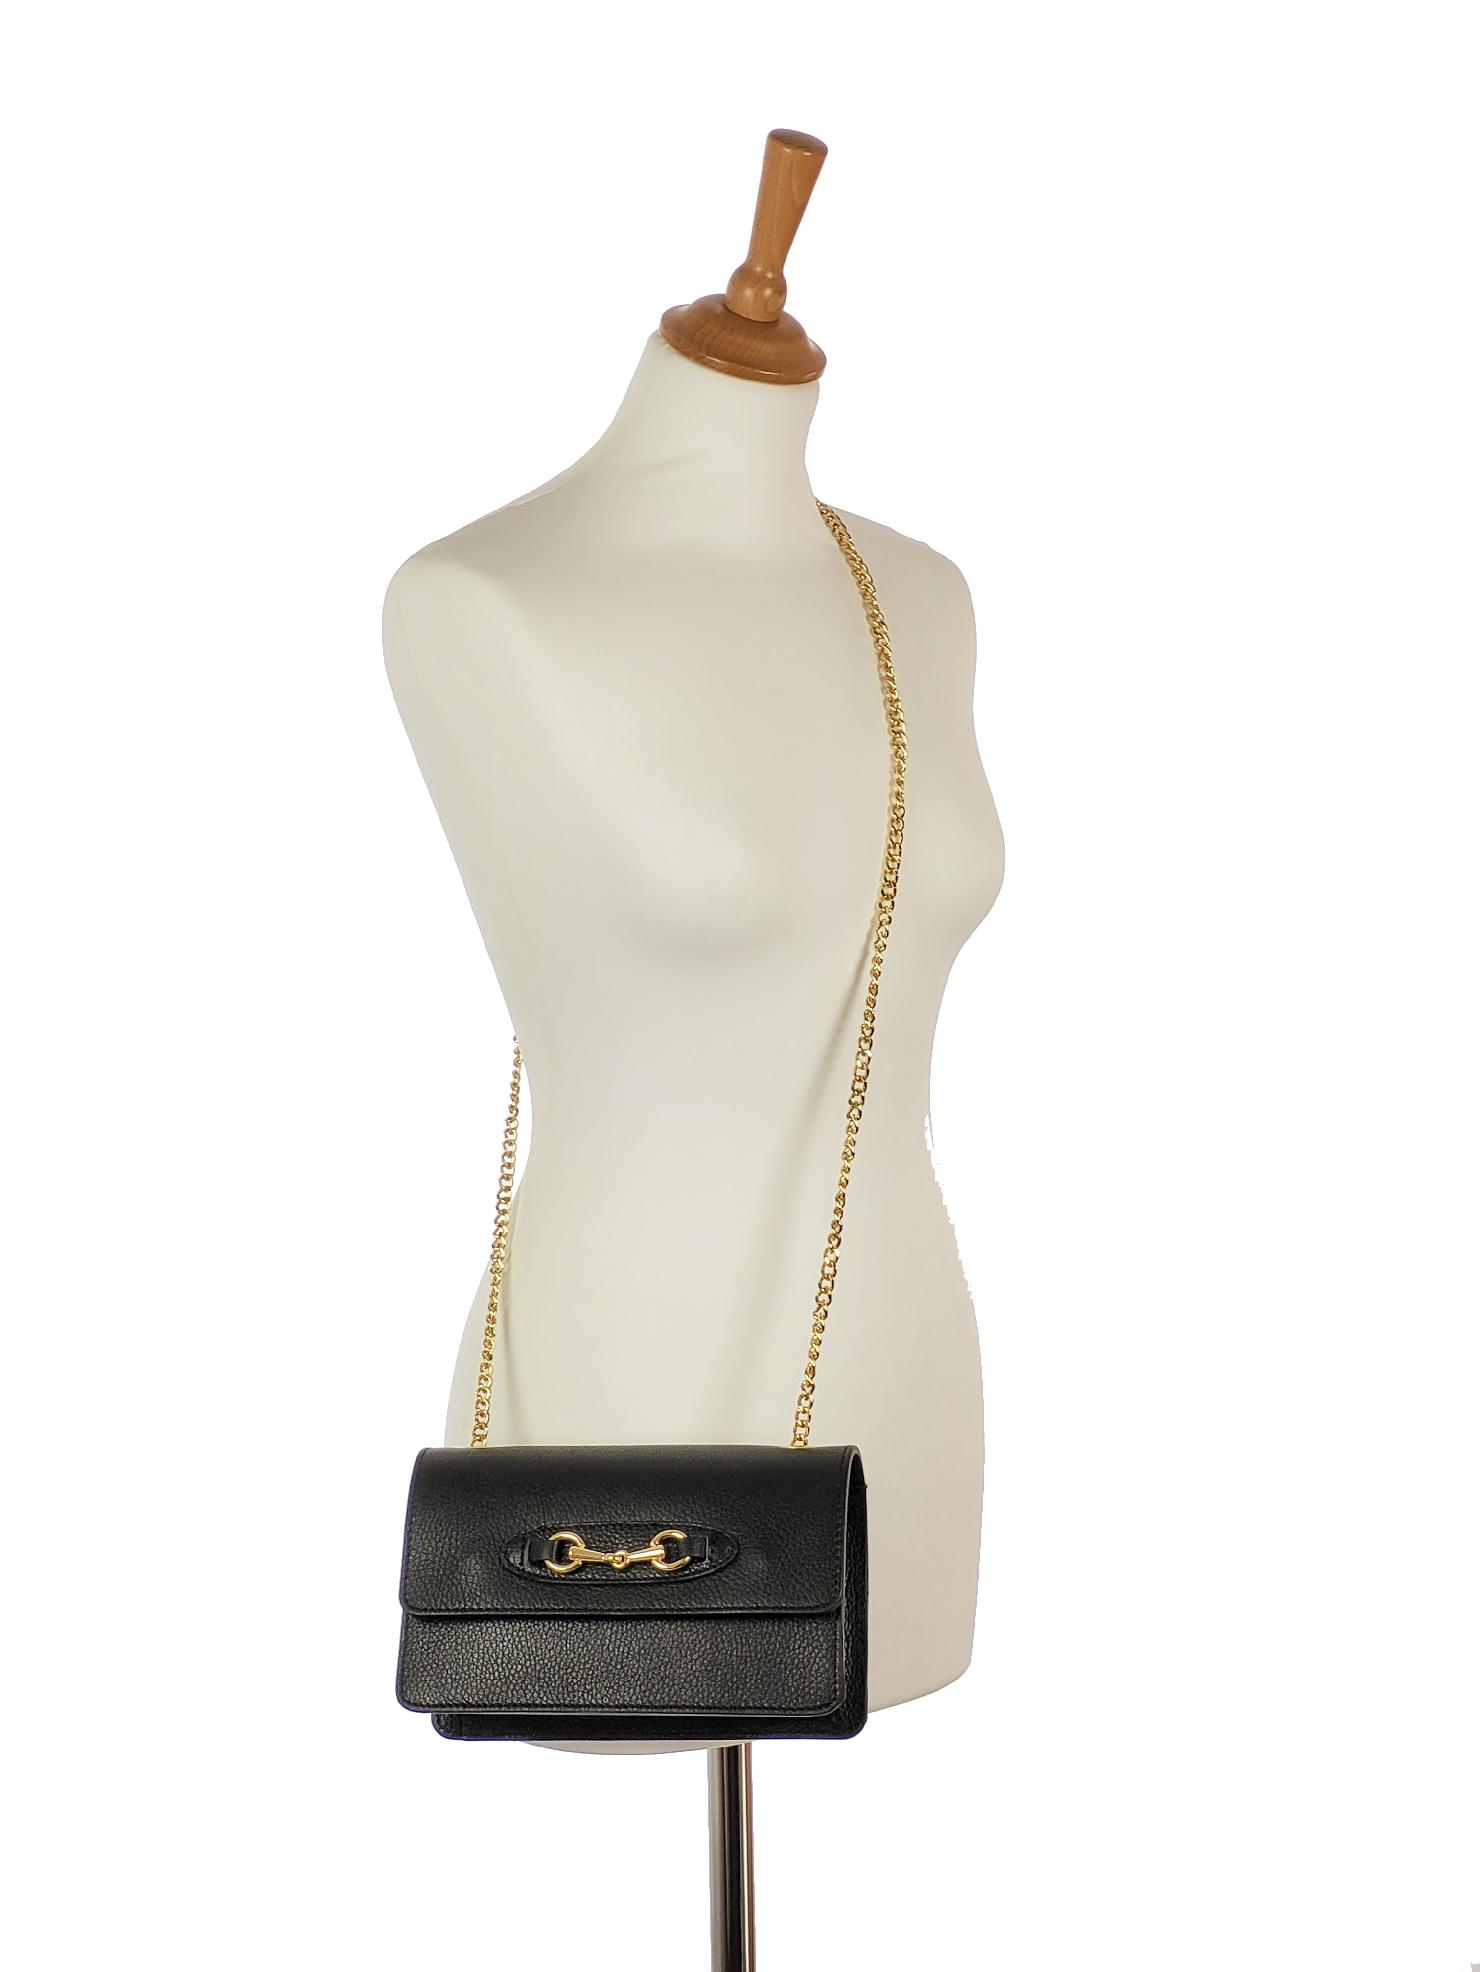 GROSSO kožená čierna crossbody kabelka s retiazkou a zlatou ozdobou Edita